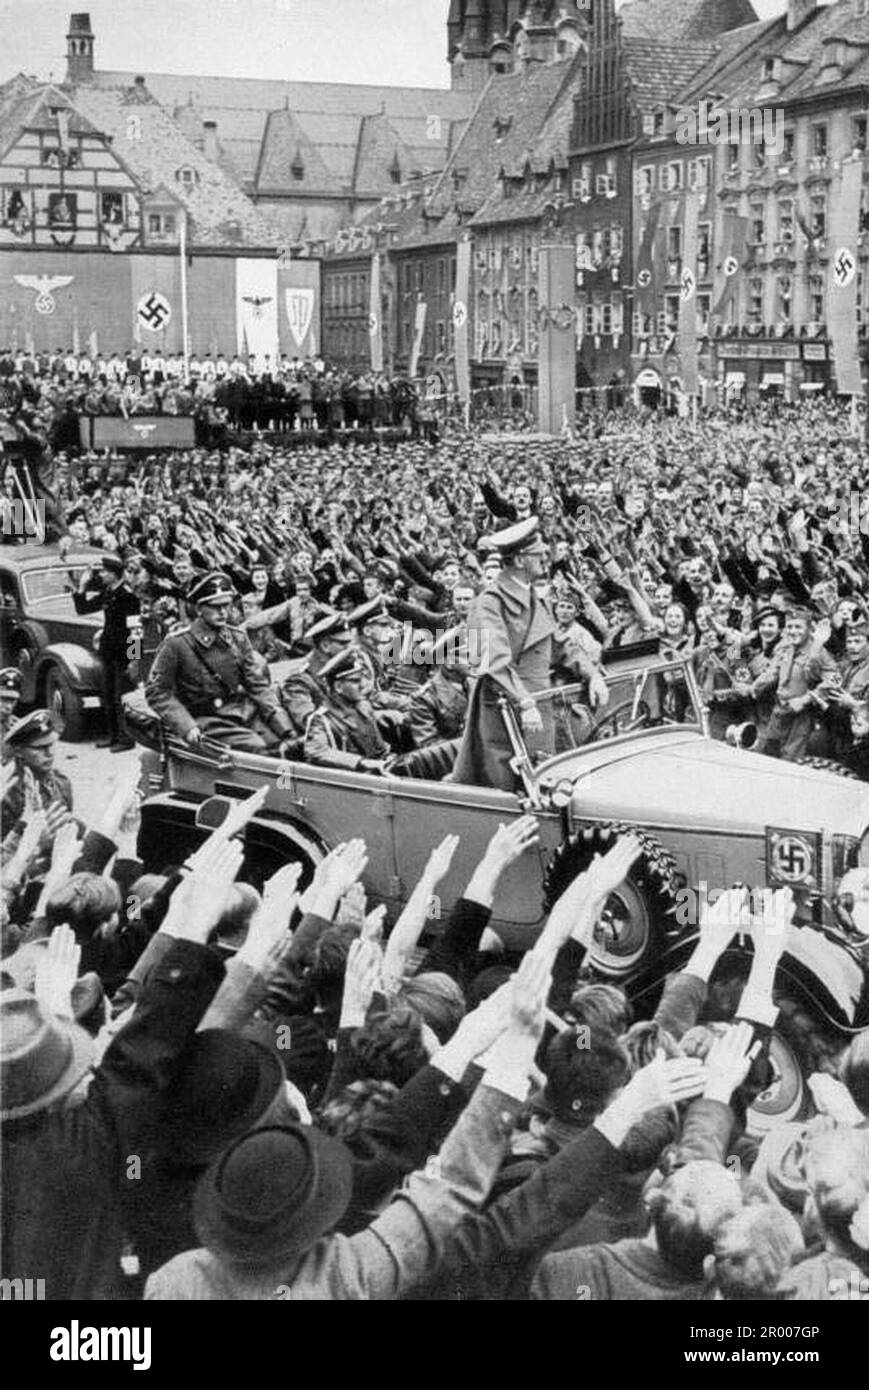 Adolf Hitler traverse la foule à Eger/Chebb le 3 octobre 1938 après l'annexion des Sudètes. Après l'annexion de l'Autriche, Hitler a exigé qu'il soit donné la région des Sudètes en Tchécoslovaquie. Lors de la conférence de Munich en septembre 1938, les puissances occidentales ont accepté cela et les nazis ont occupé la zone. Peu de temps après, Hitler a rompu sa promesse et a envahi le reste de la Tchécoslovaquie avant de tourner son attention vers la Pologne. Banque D'Images